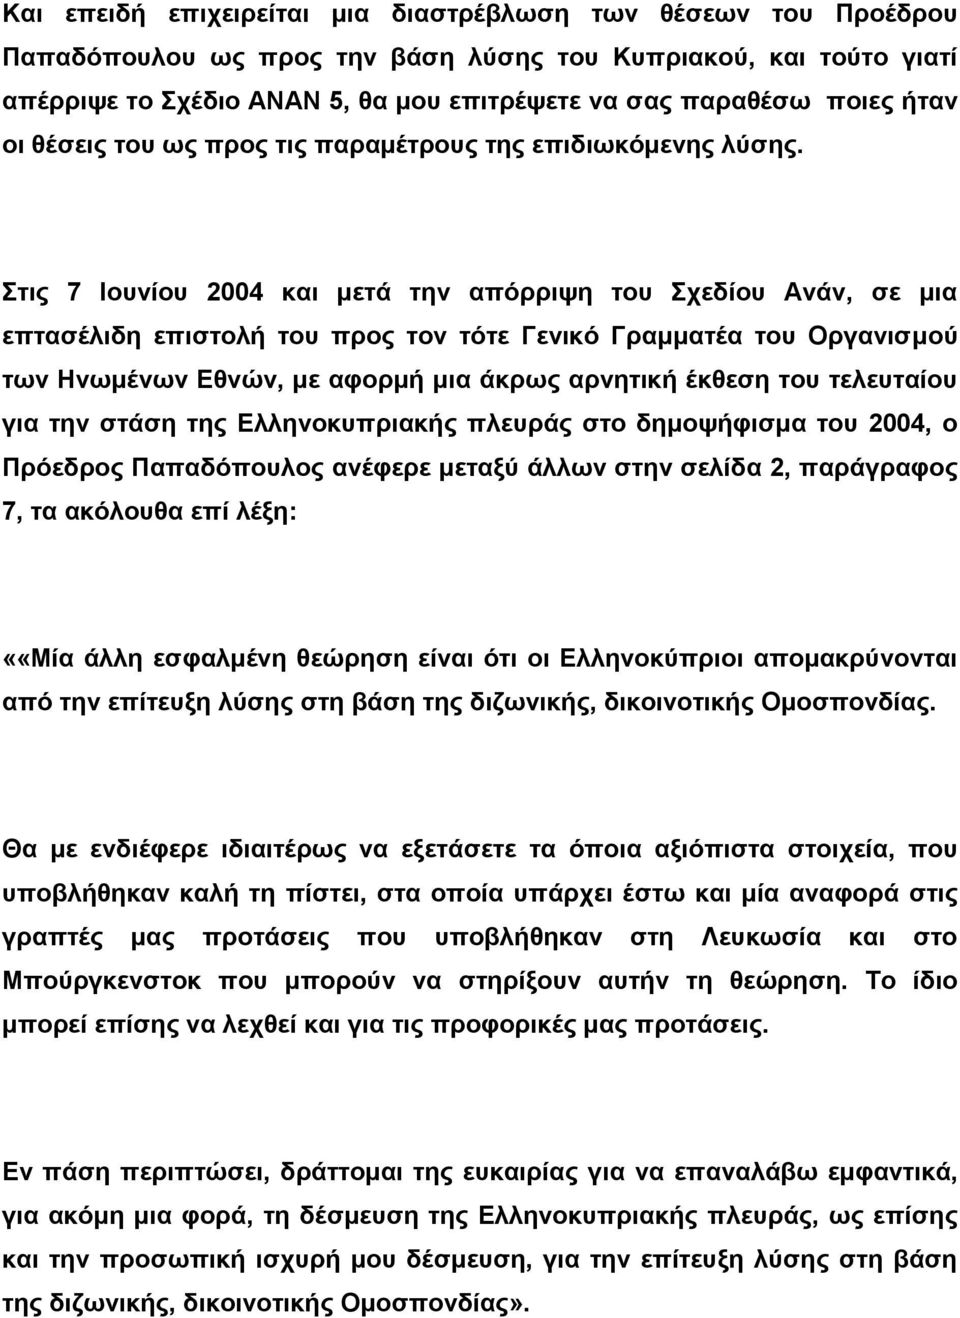 Στις 7 Ιουνίου 2004 και μετά την απόρριψη του Σχεδίου Ανάν, σε μια επτασέλιδη επιστολή του προς τον τότε Γενικό Γραμματέα του Οργανισμού των Ηνωμένων Εθνών, με αφορμή μια άκρως αρνητική έκθεση του